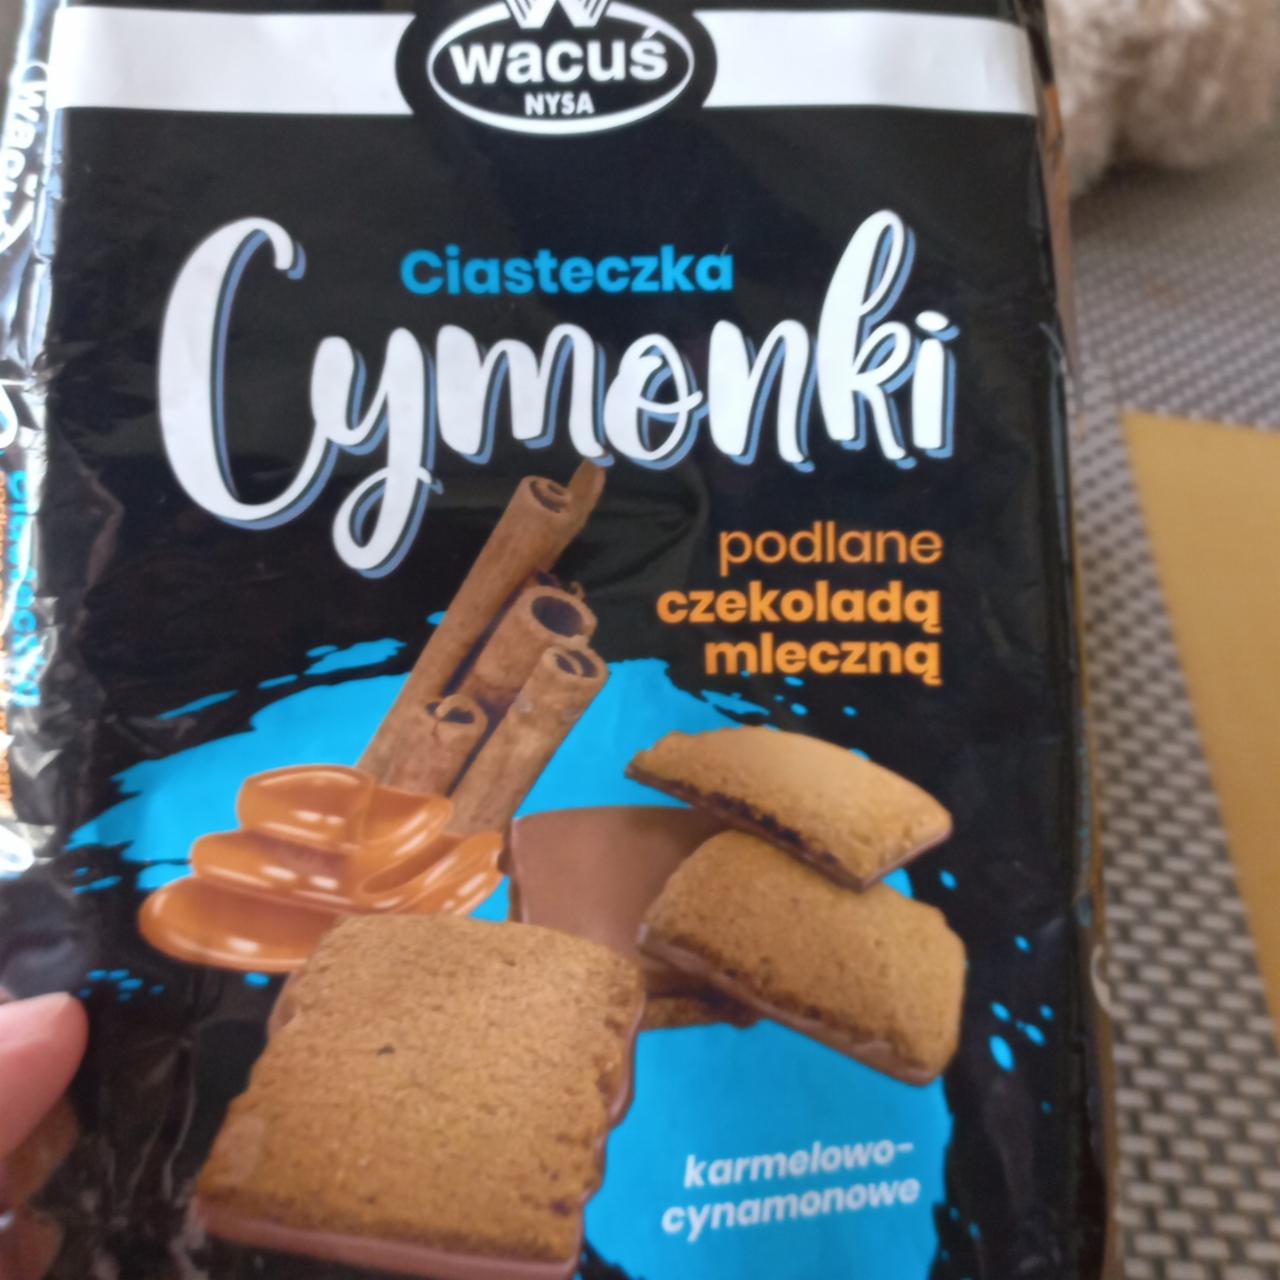 Фото - печеньки карамельно-каричные с молочным шоколадом Ciasteczka Cymonki Wacus